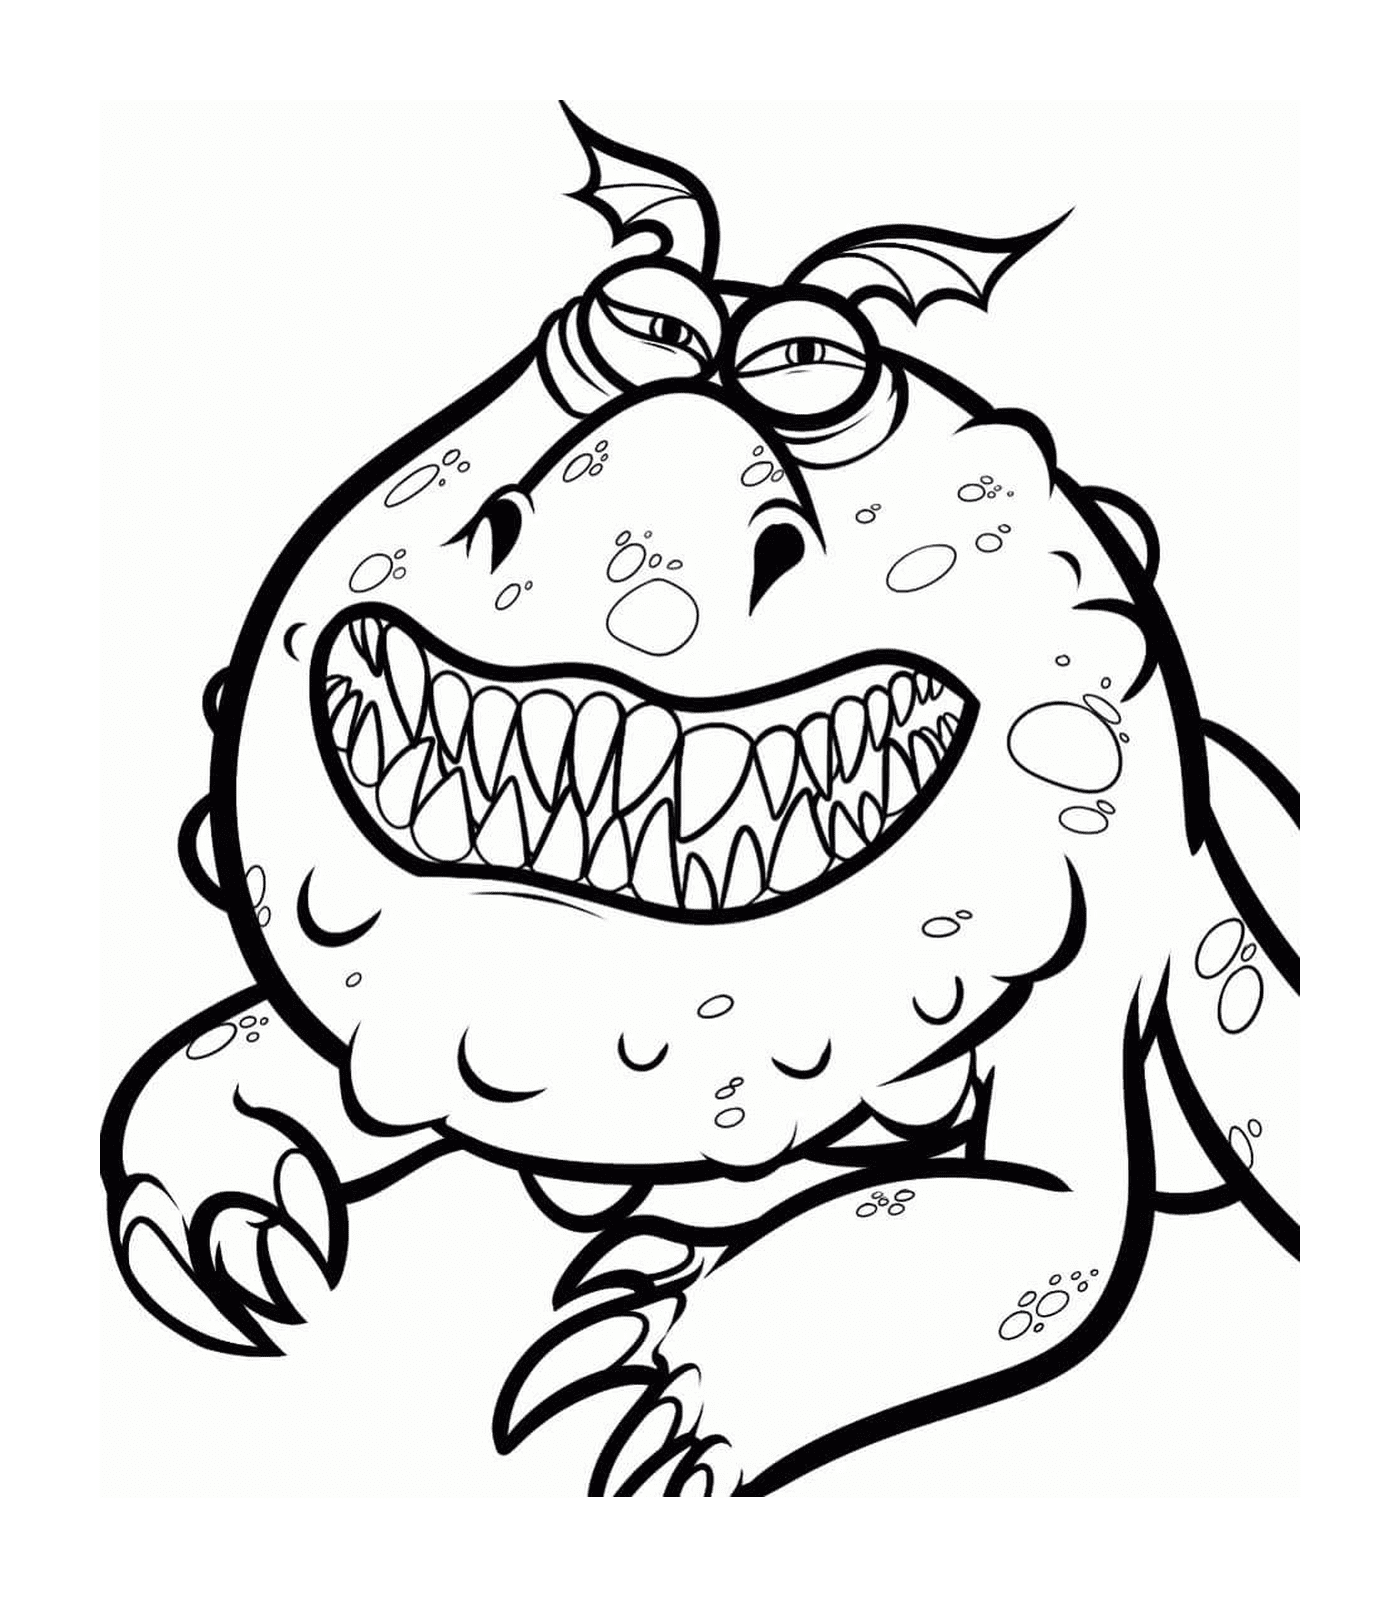  Meatlug, un mostro con un grande sorriso 